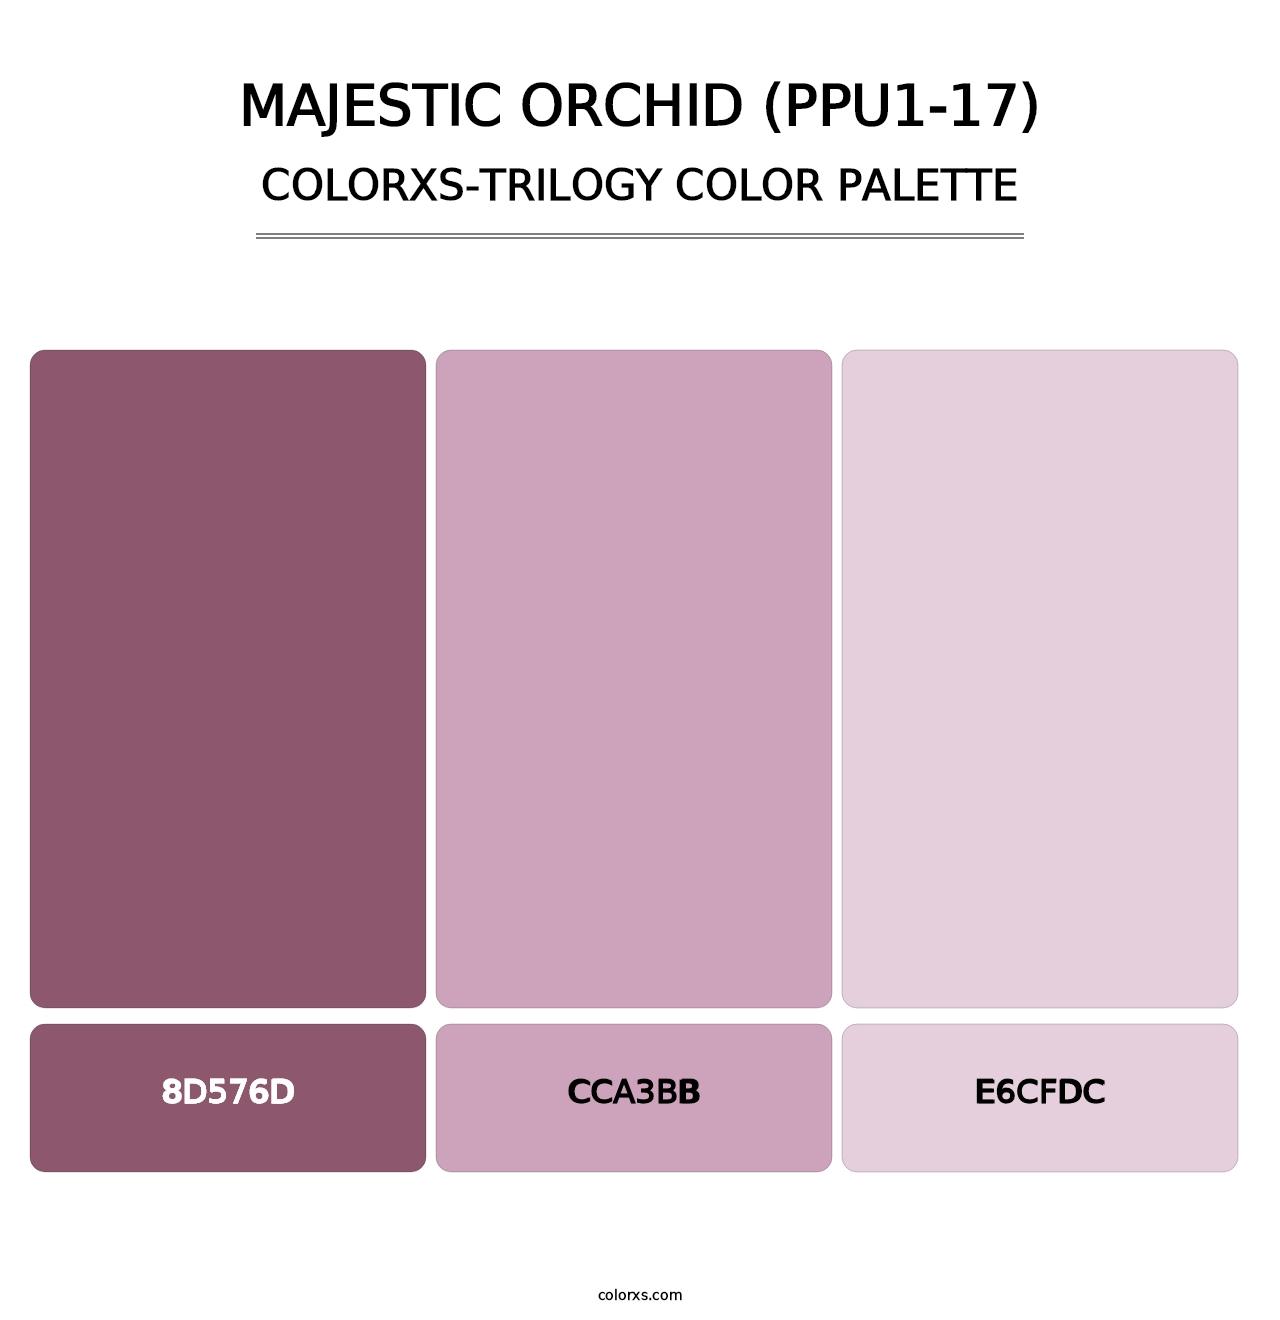 Majestic Orchid (PPU1-17) - Colorxs Trilogy Palette